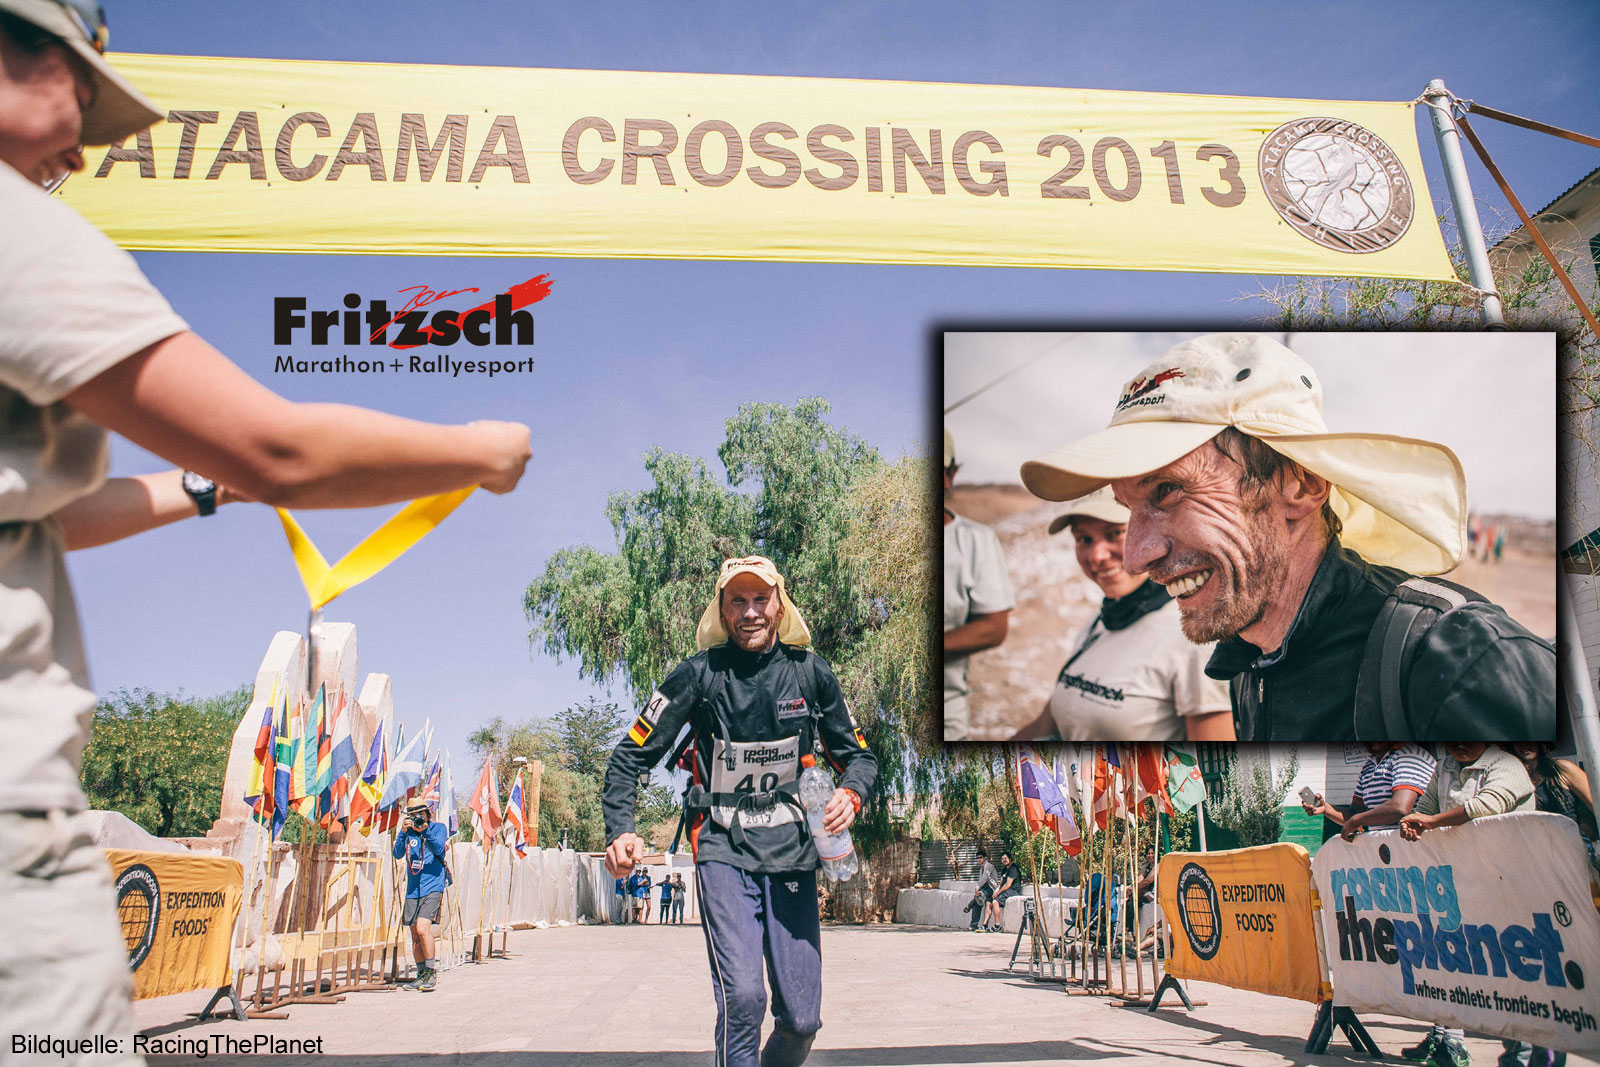 Atacama Crossing 2013